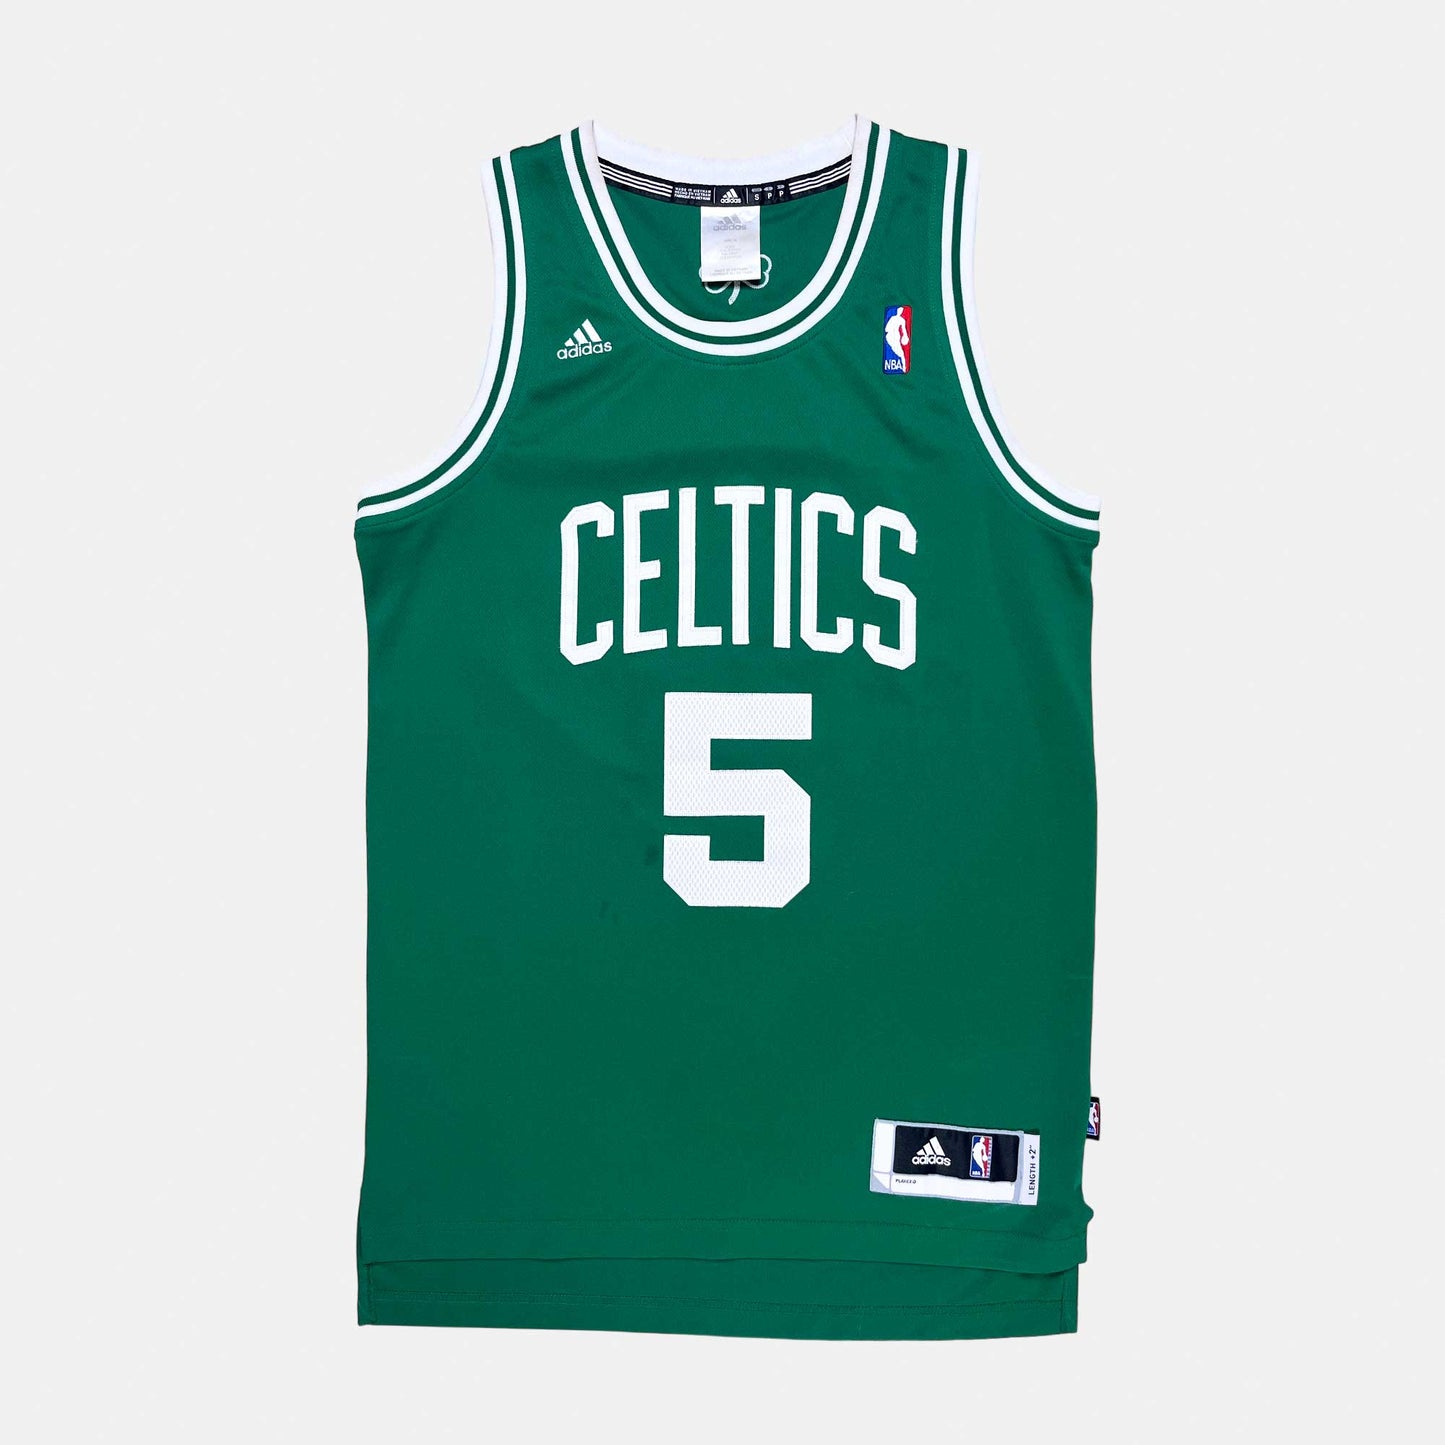 Boston Celtics - Kevin Garnett - Größe S - Adidas - NBA Trikot